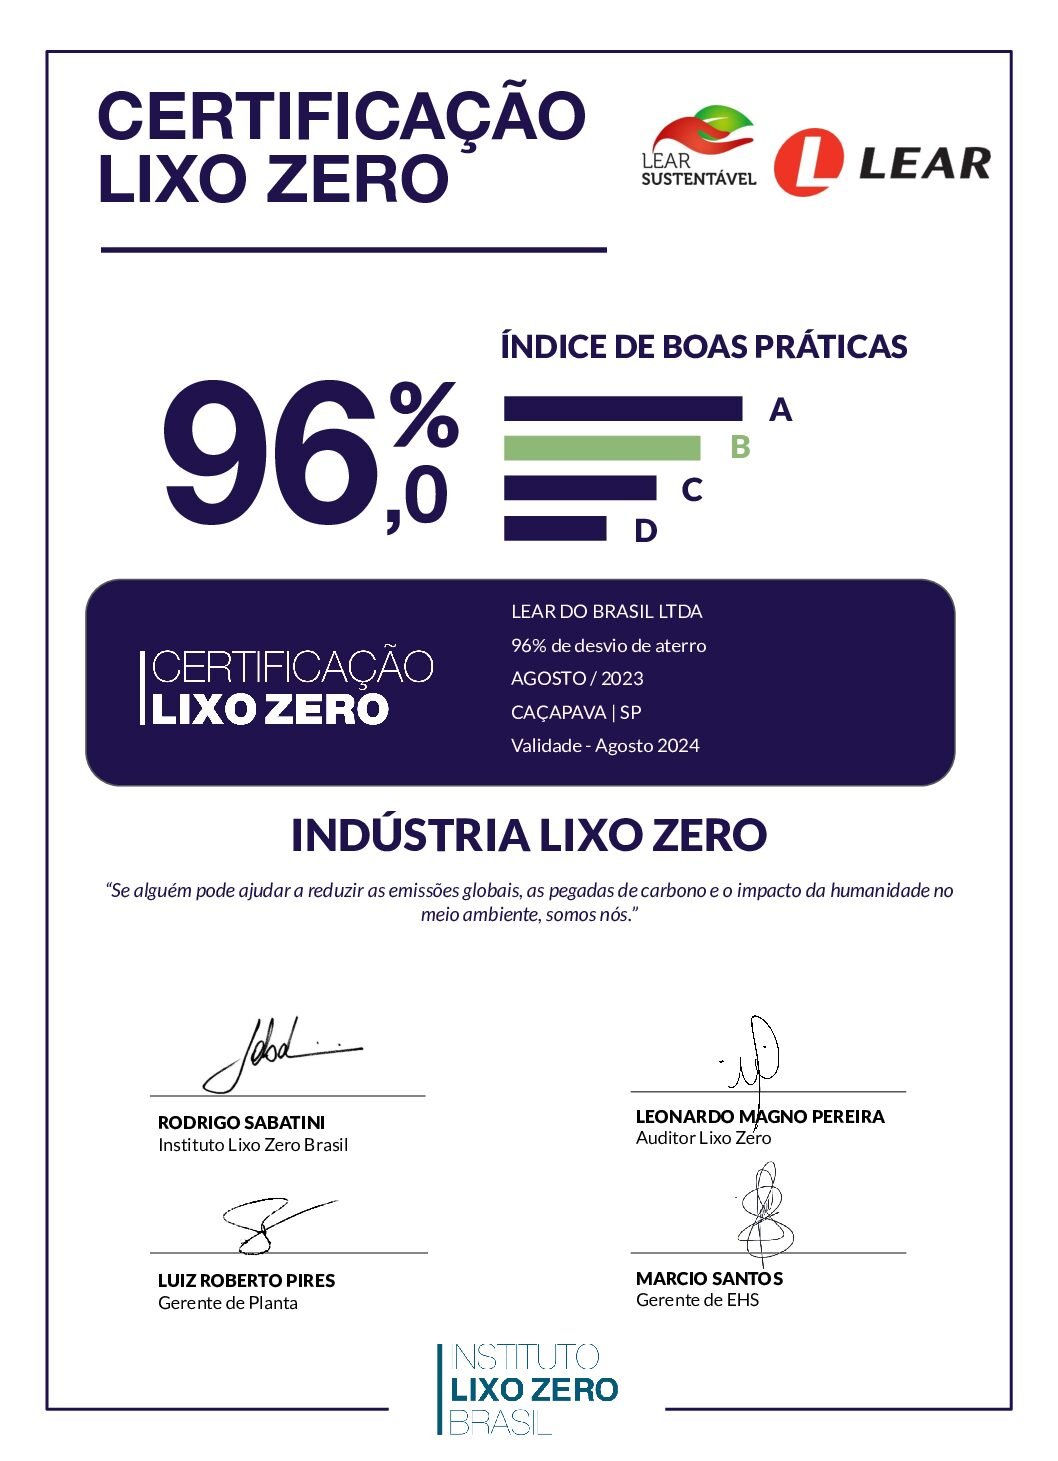 CertificaçãoLixoZero_Lear_Caçapava_SP_Agosto_2023 Assinado